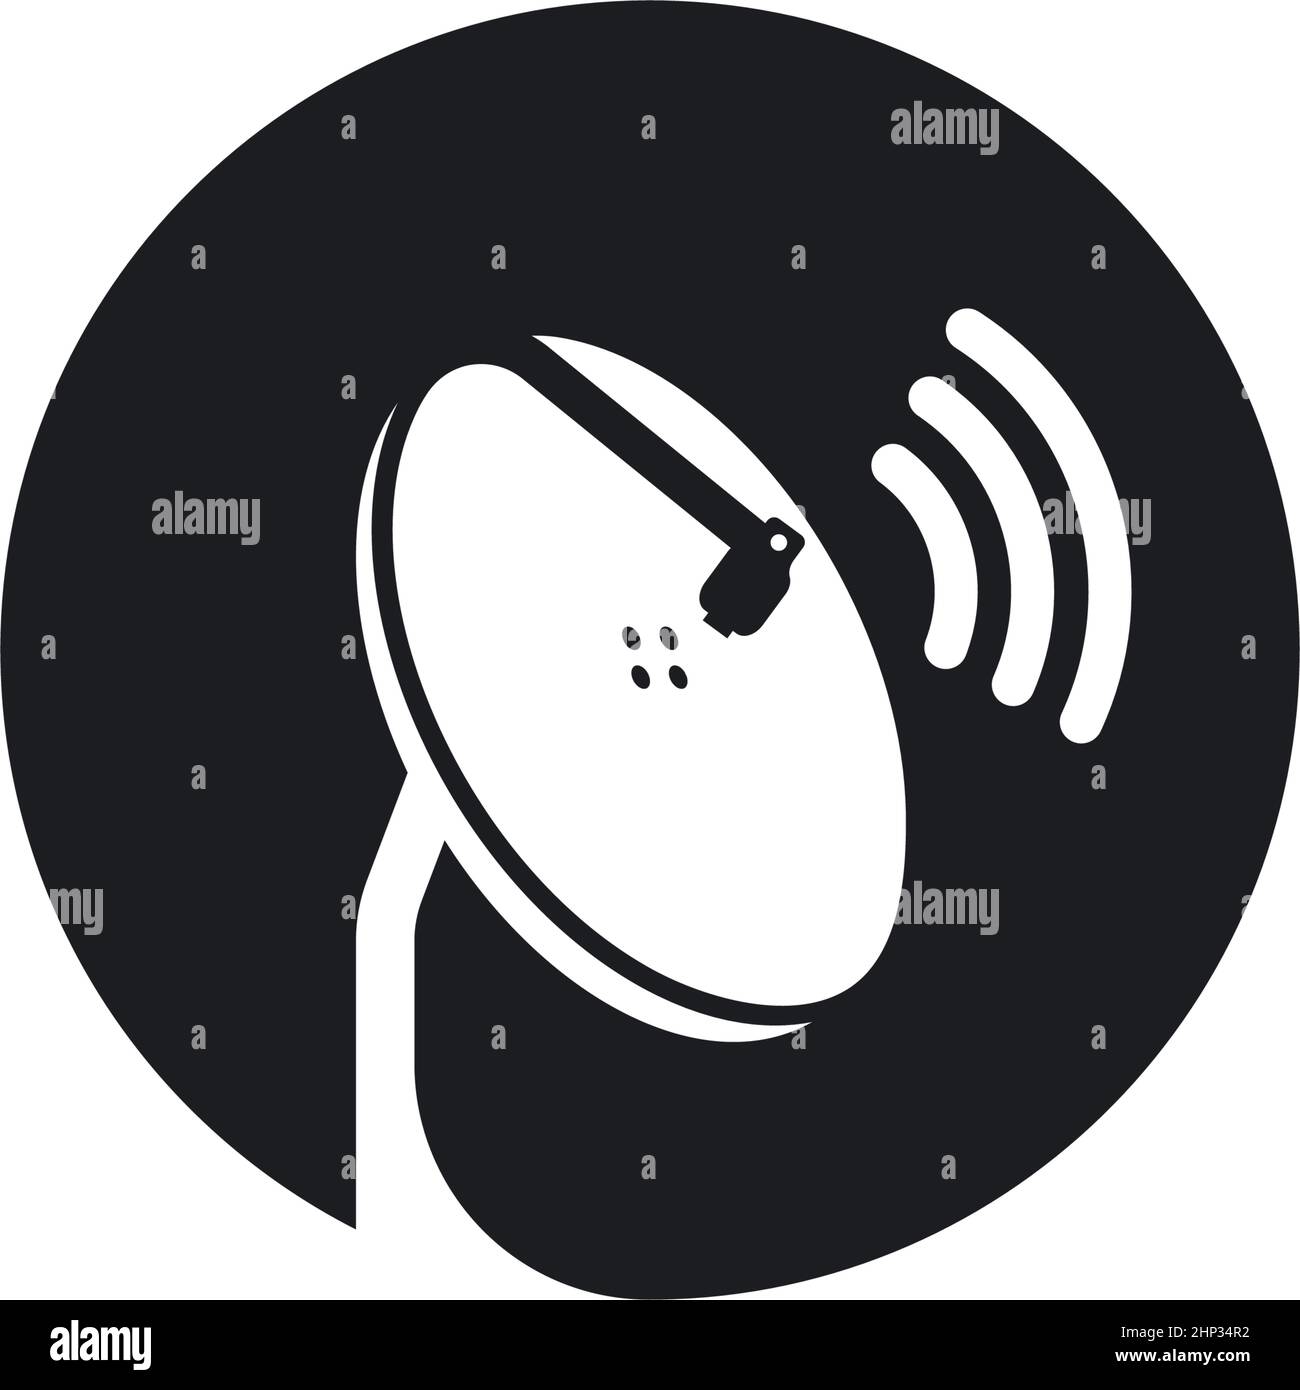 diseño de ilustración vectorial de iconos de tv satélite parabólica Ilustración del Vector